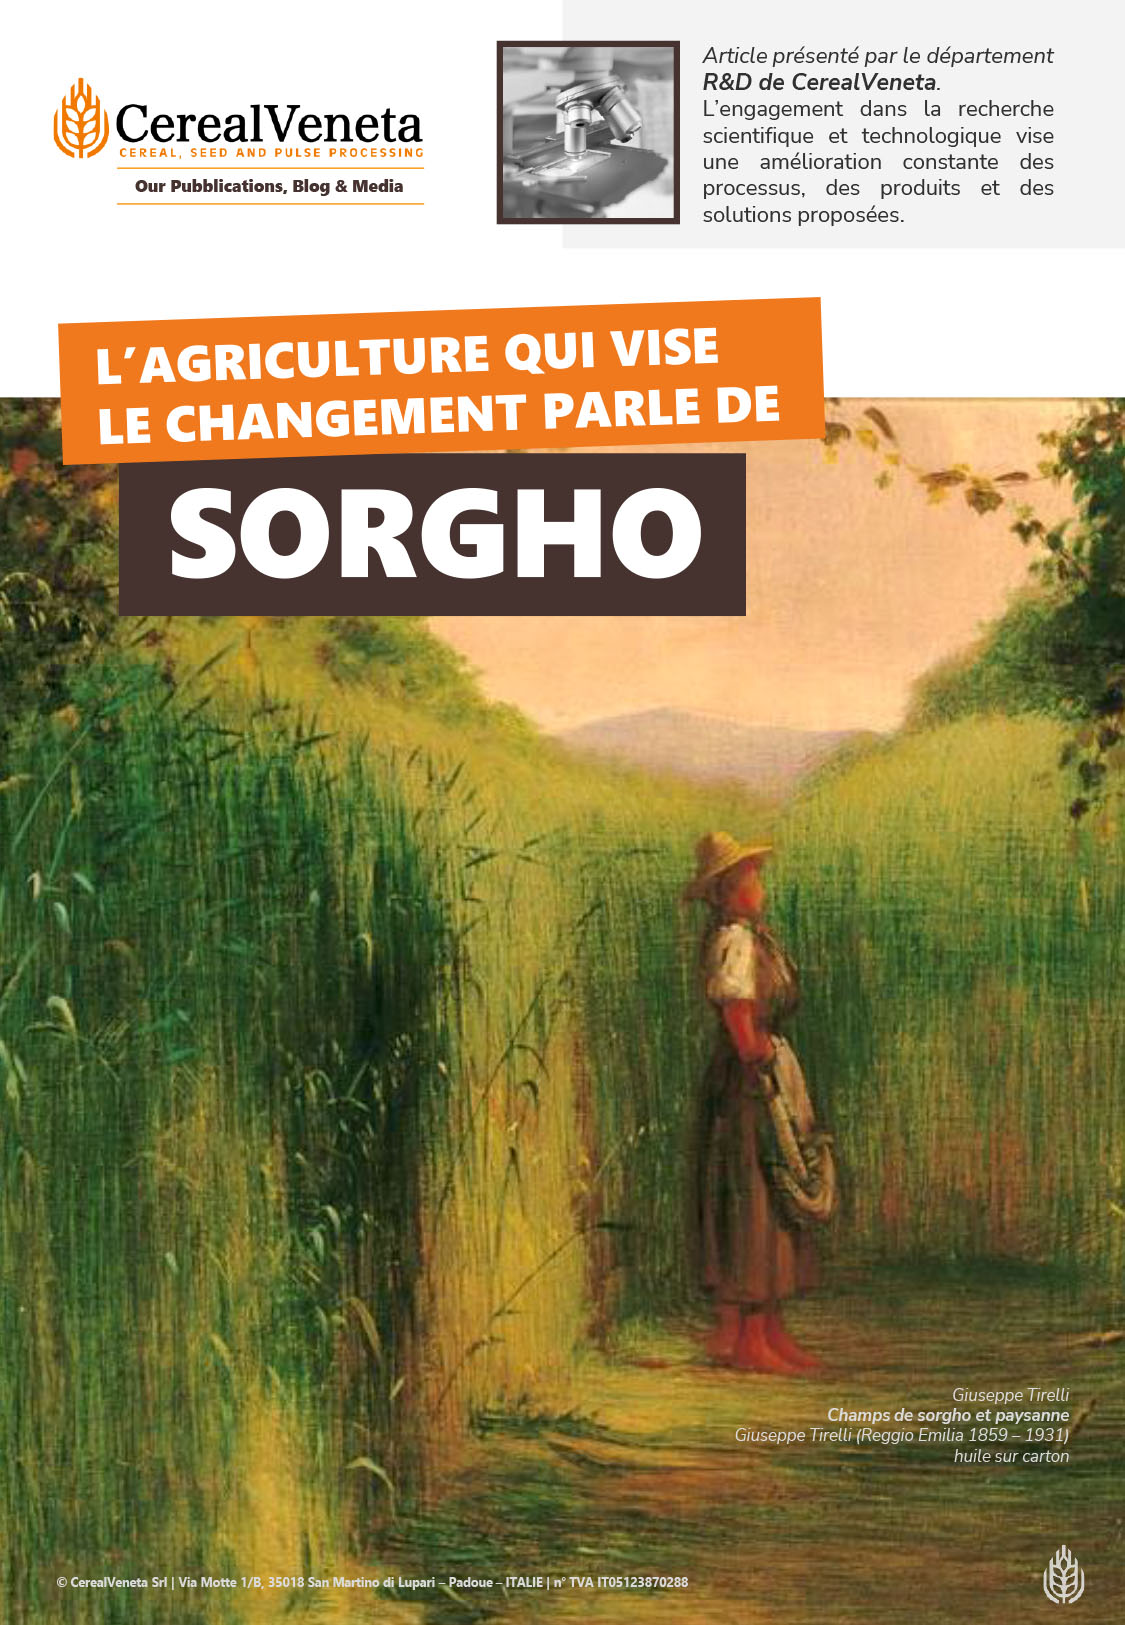 Le sorgho, une céréale résistante à la sécheresse et sans gluten